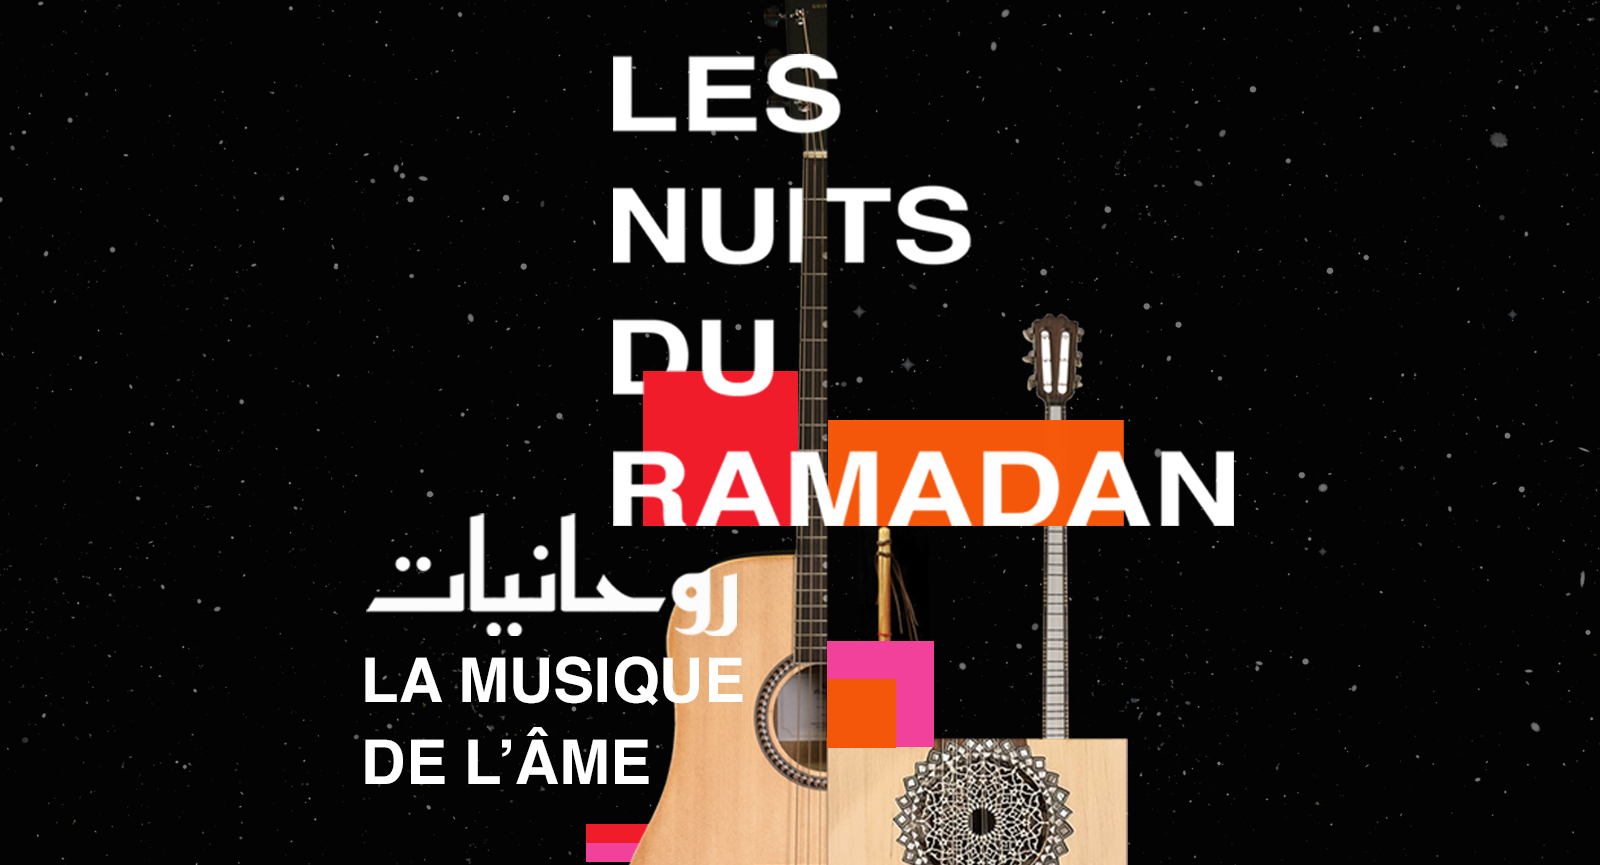  Les nuits du Ramadan de l'IFM sont de retour !